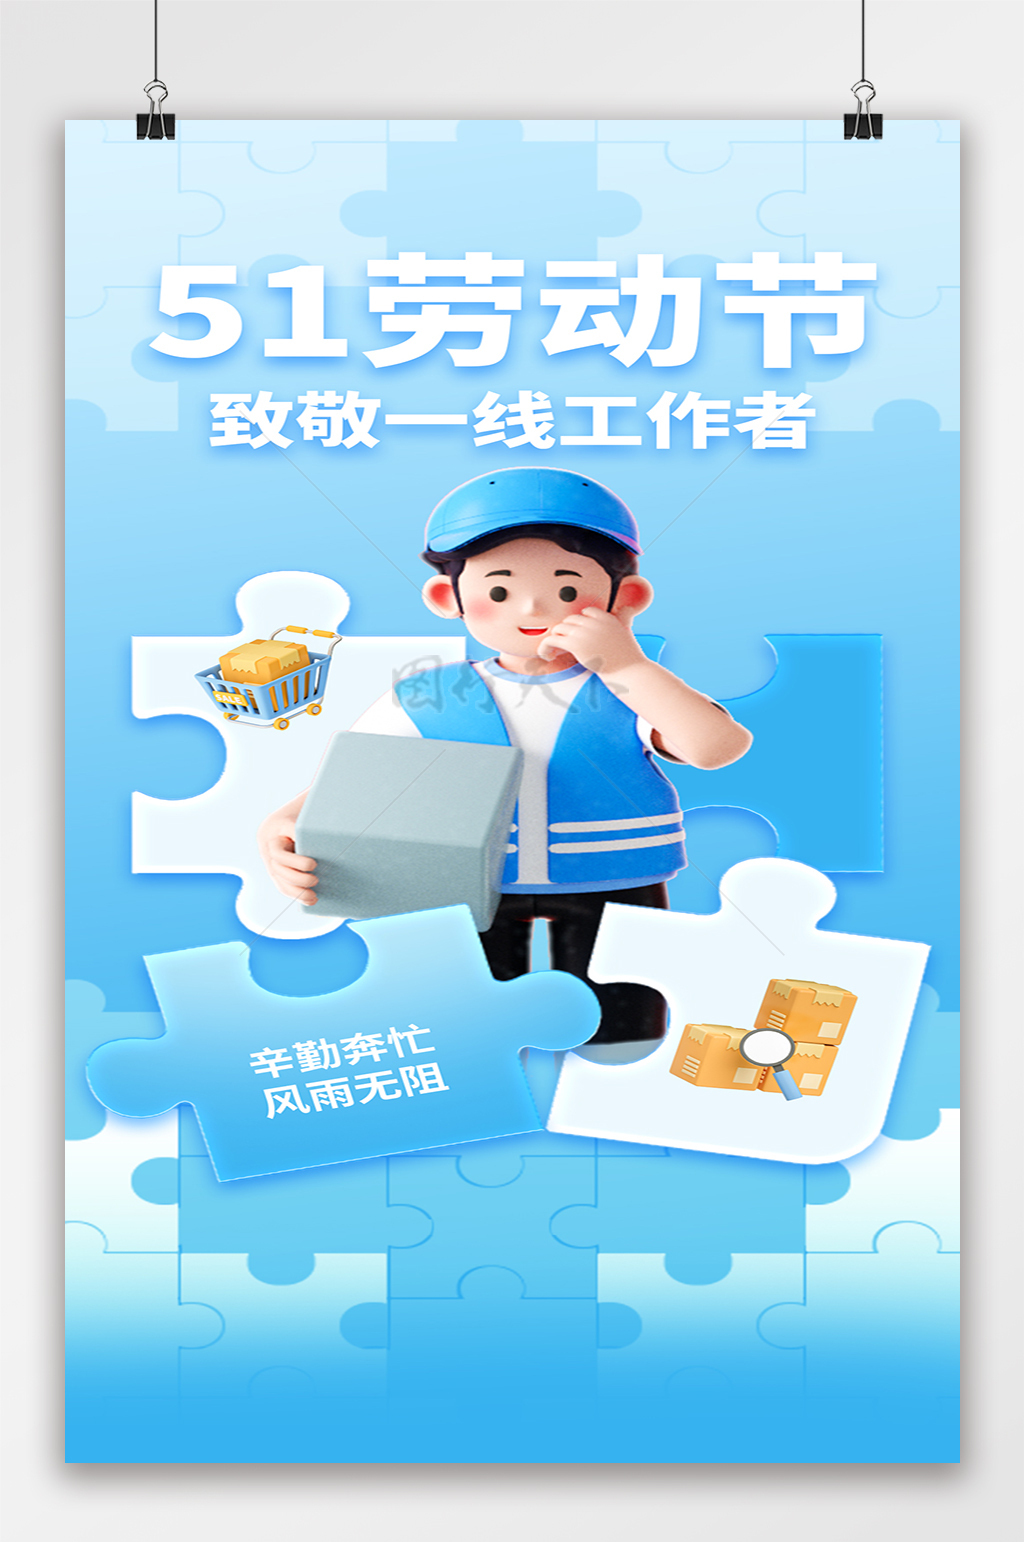 51劳动节拼图风蓝色海报